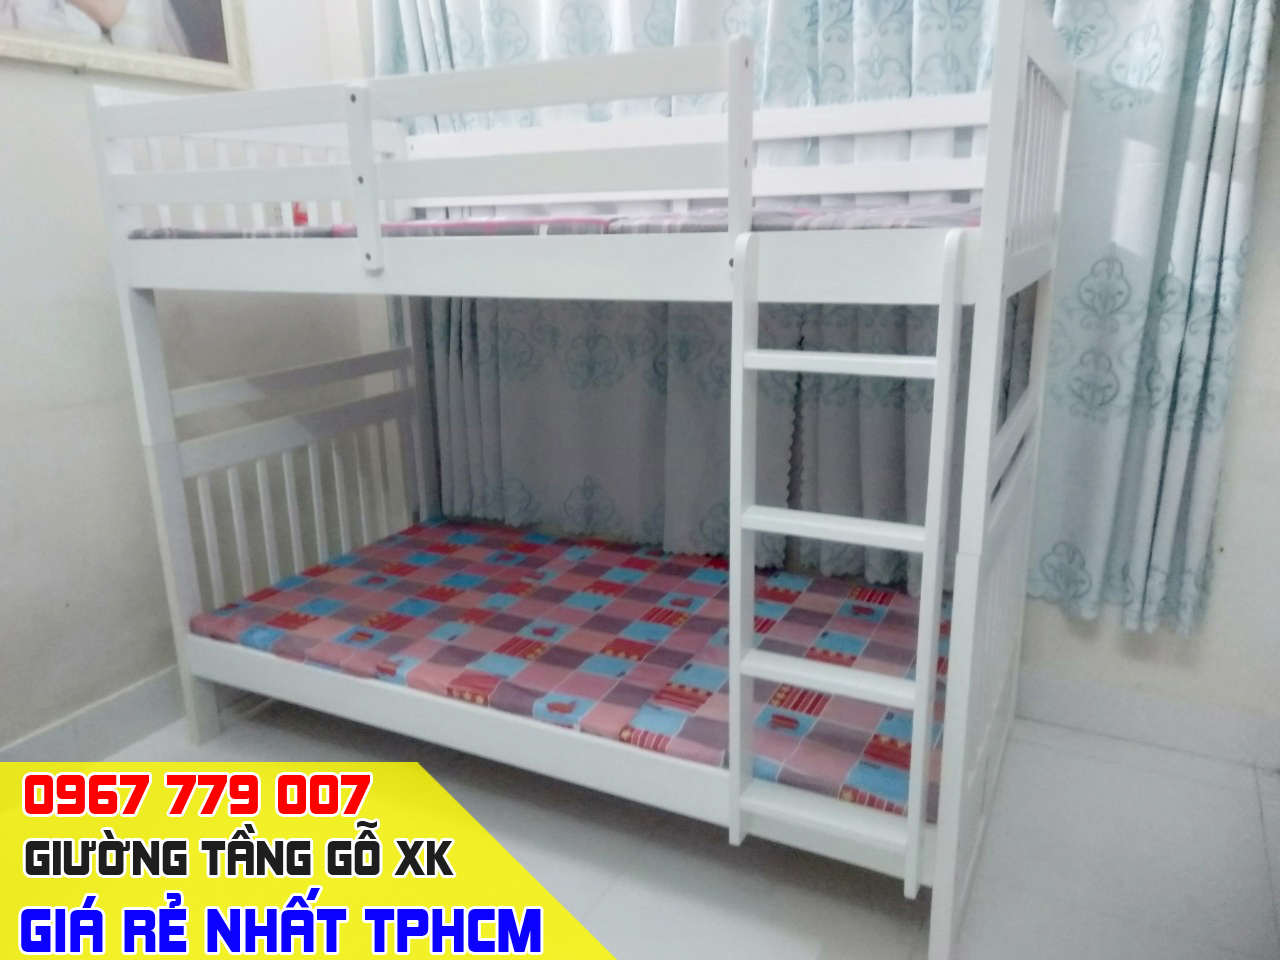 CH bán giường tầng trẻ em giá rẻ uy tín nhất Quận Gò Vấp TPHCM 20